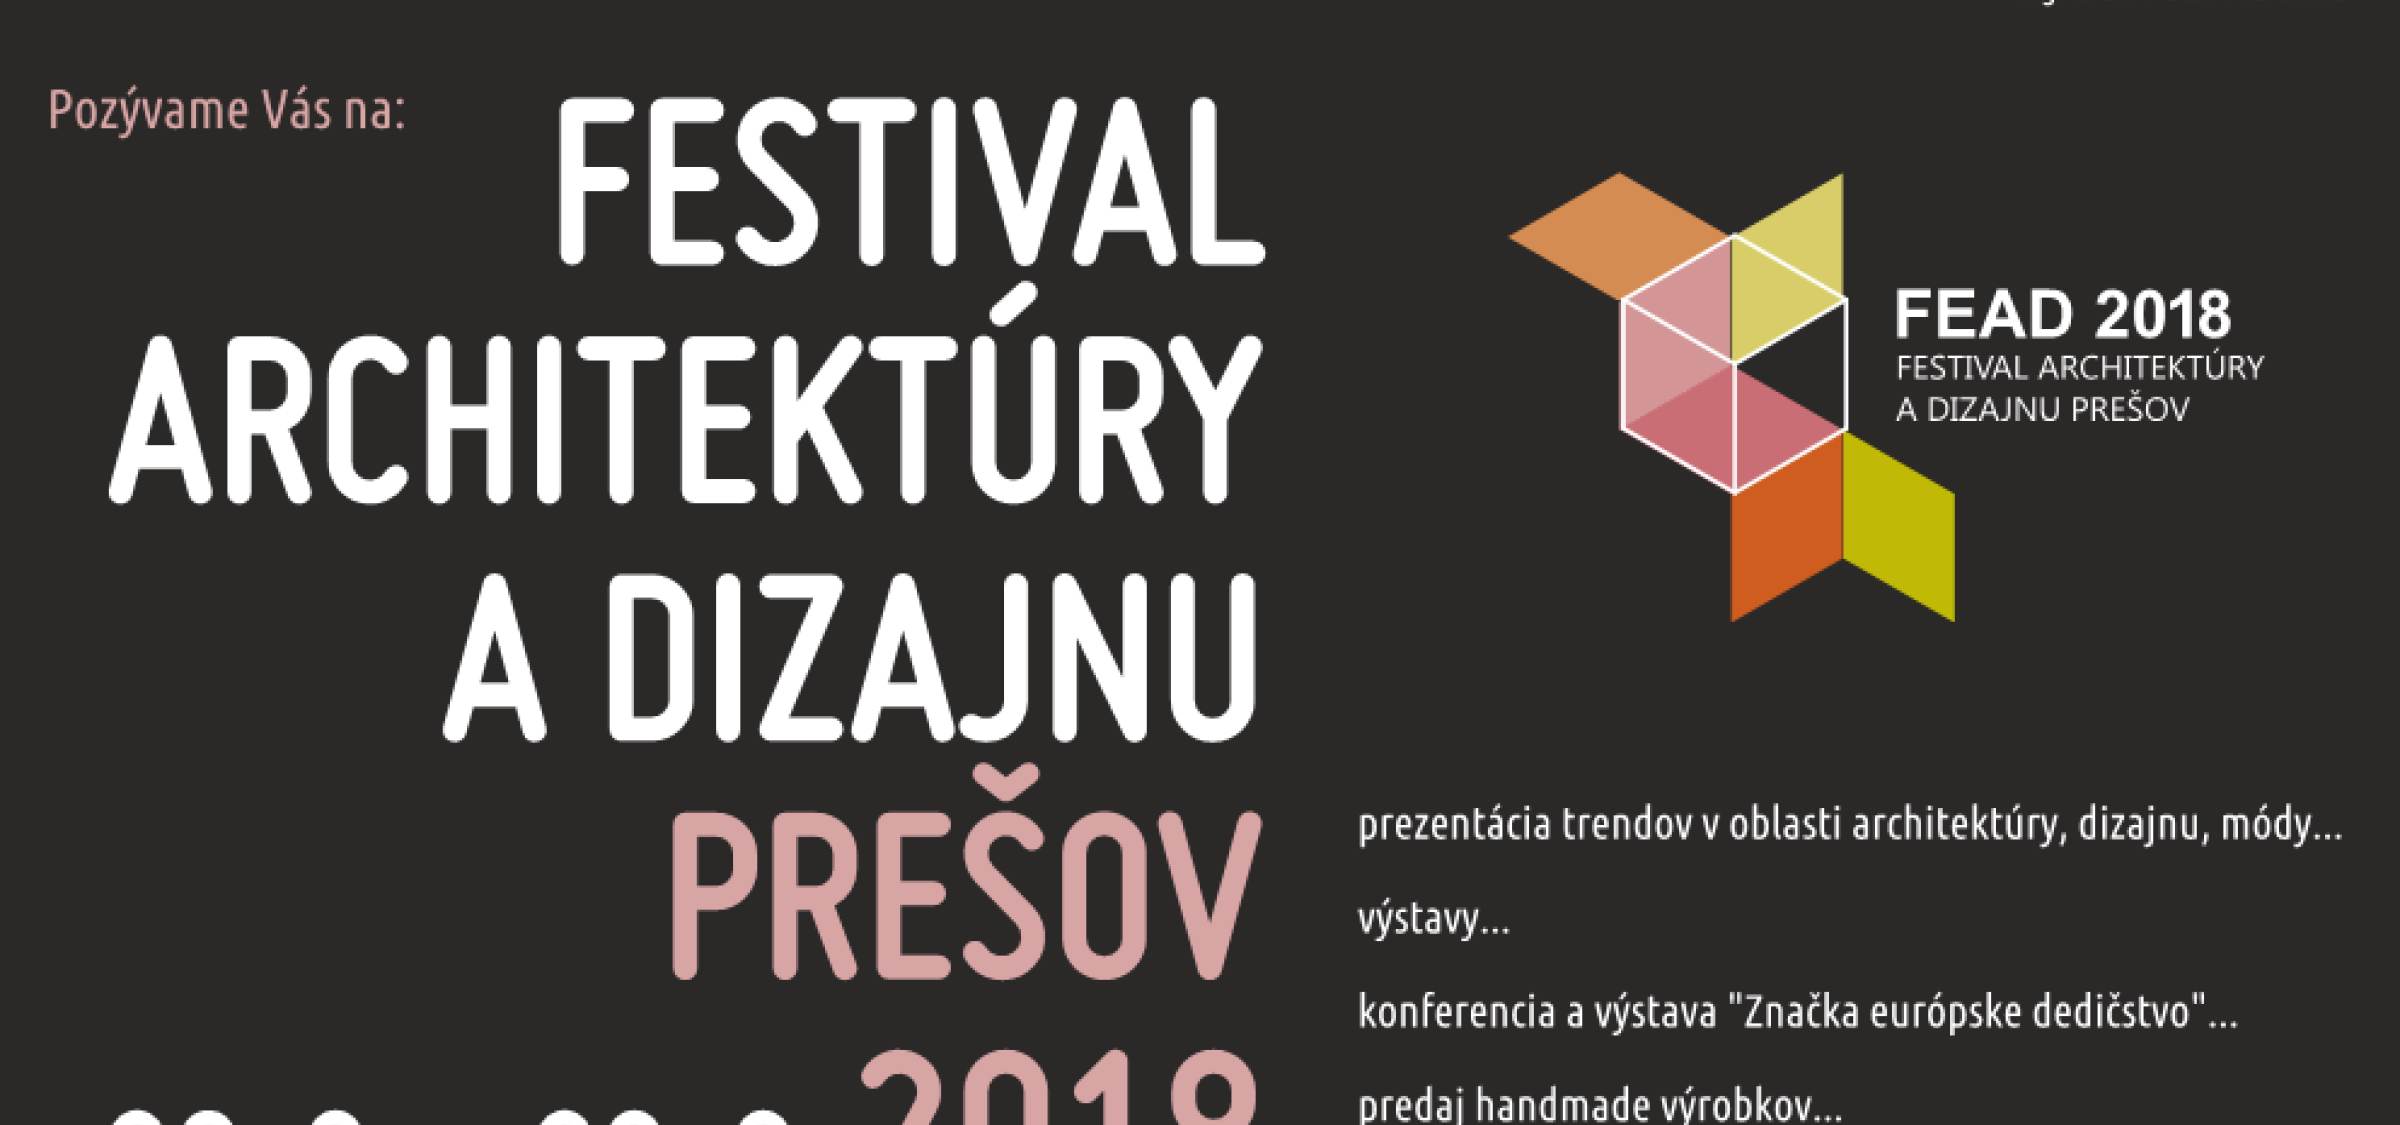 Festival of Architecture and Design in Prešov | News | Atrium Architekti